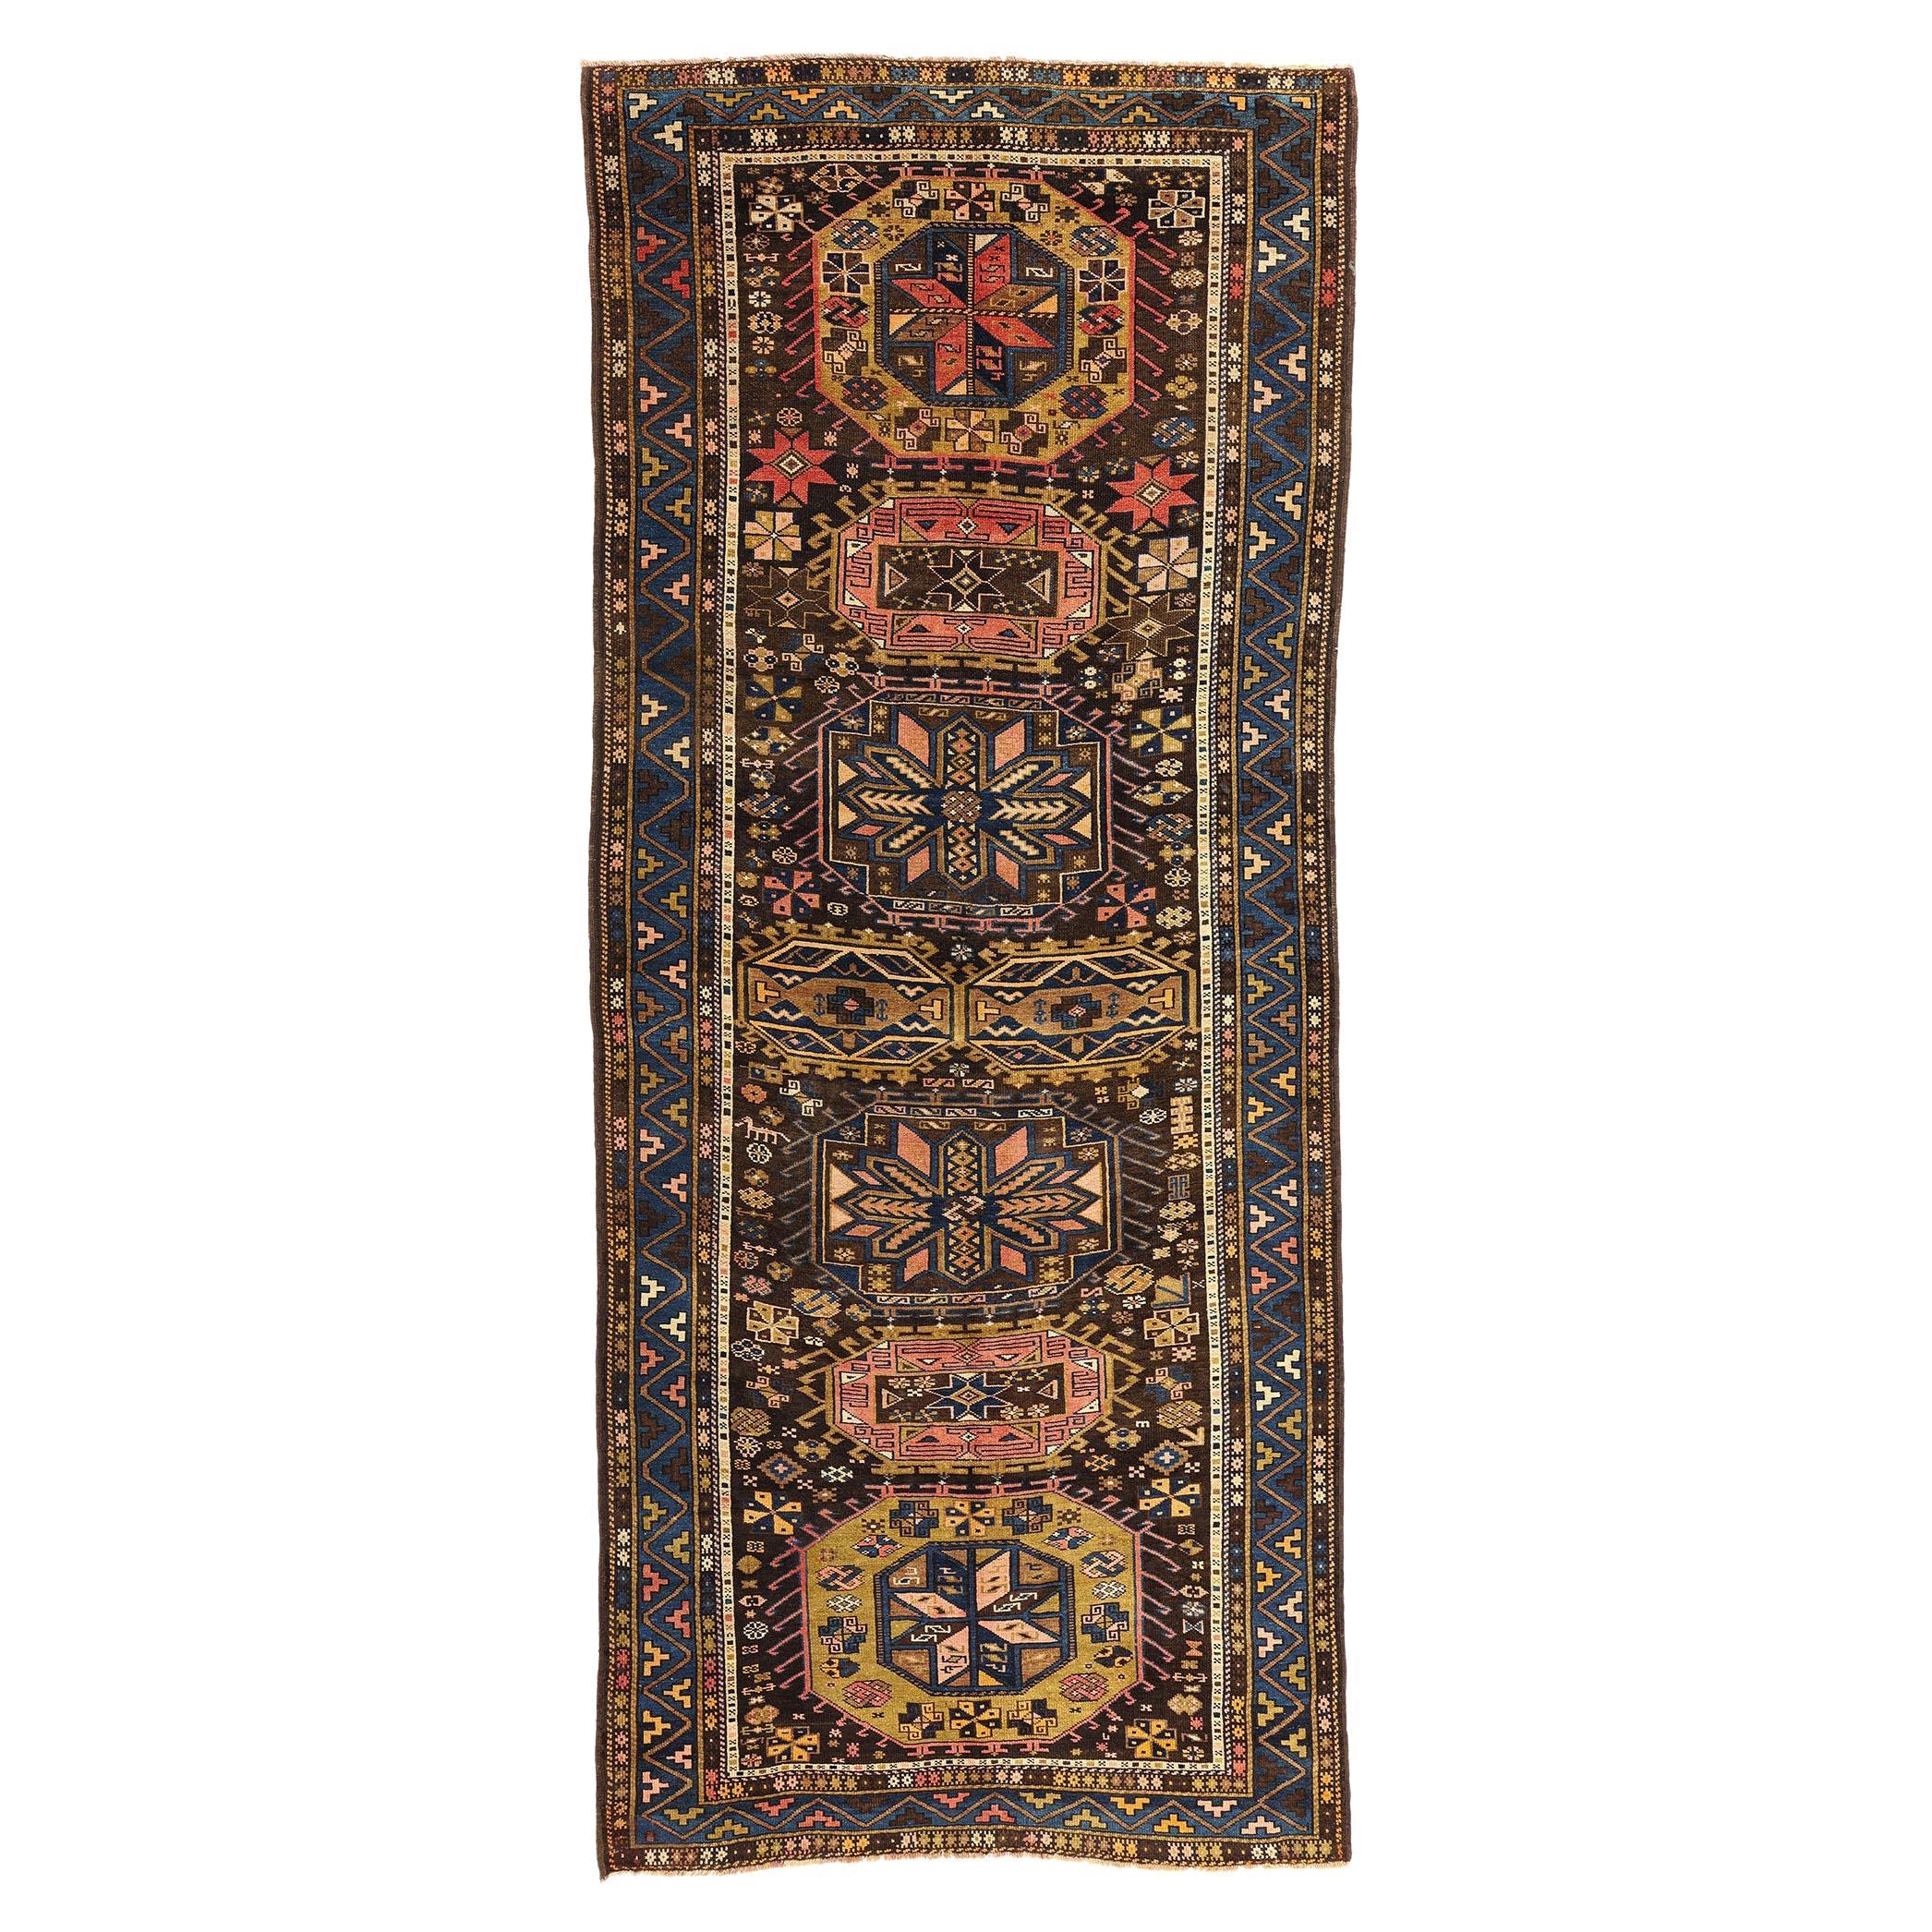 Late 19th Century Antique Caucasian Tribal Carpet